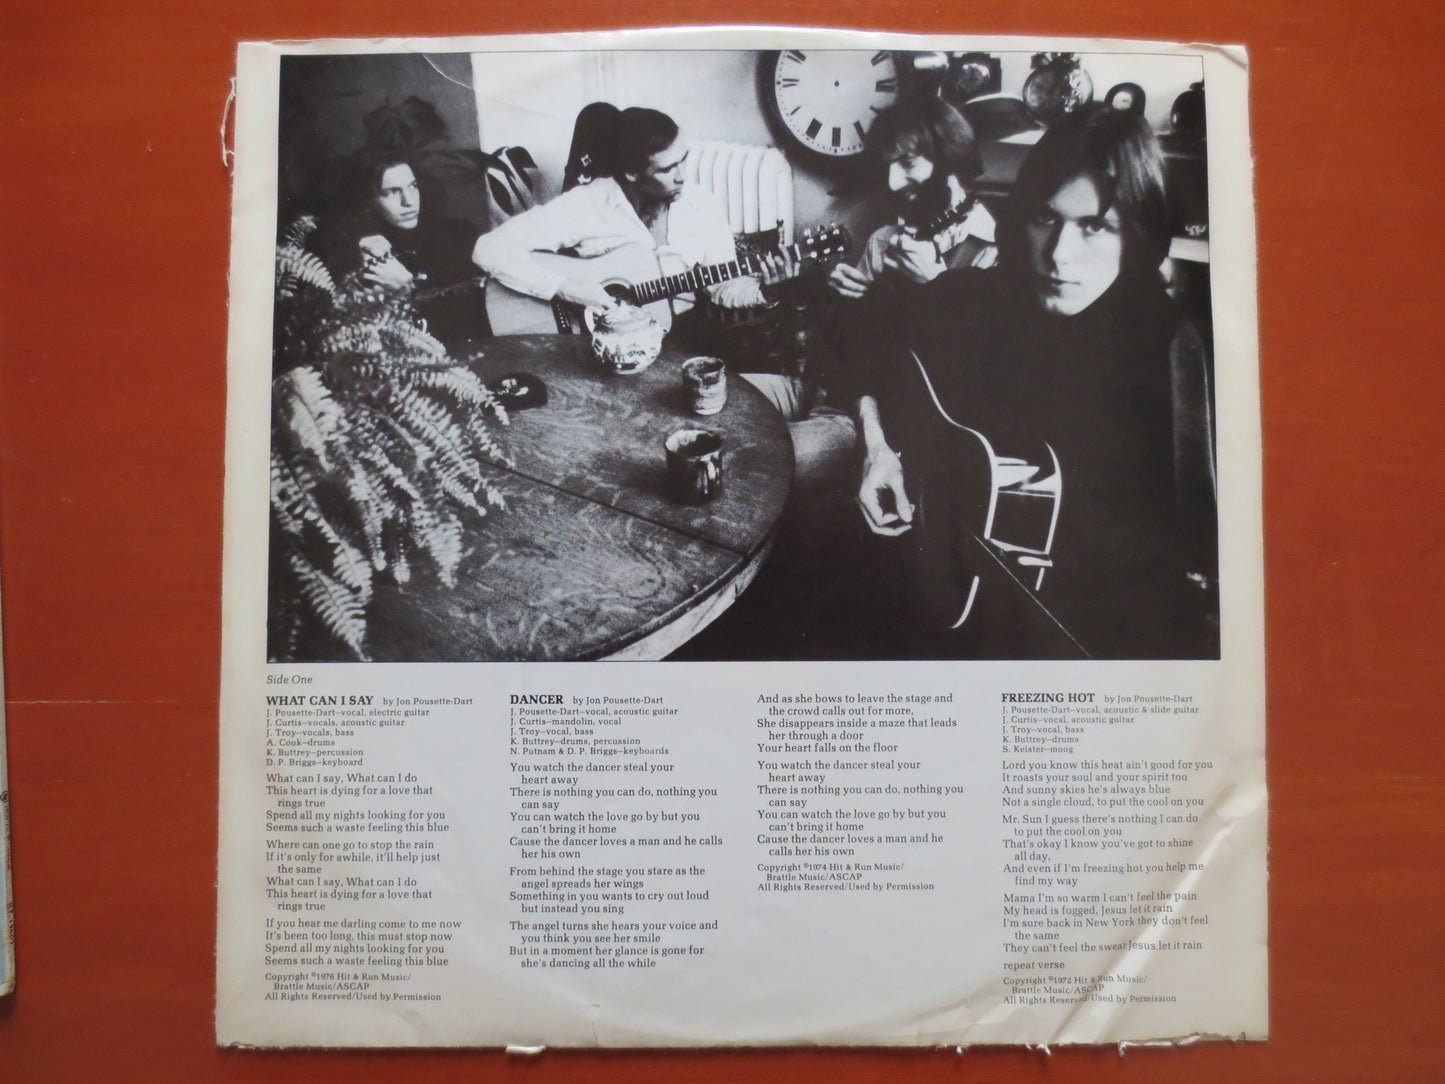 POUSETTE DART BAND, Rock Album, Soft Rock Album, Rock Vinyl, Rock Record, Vintage Vinyl, Vintage Album, Vinyl, 1976 Records